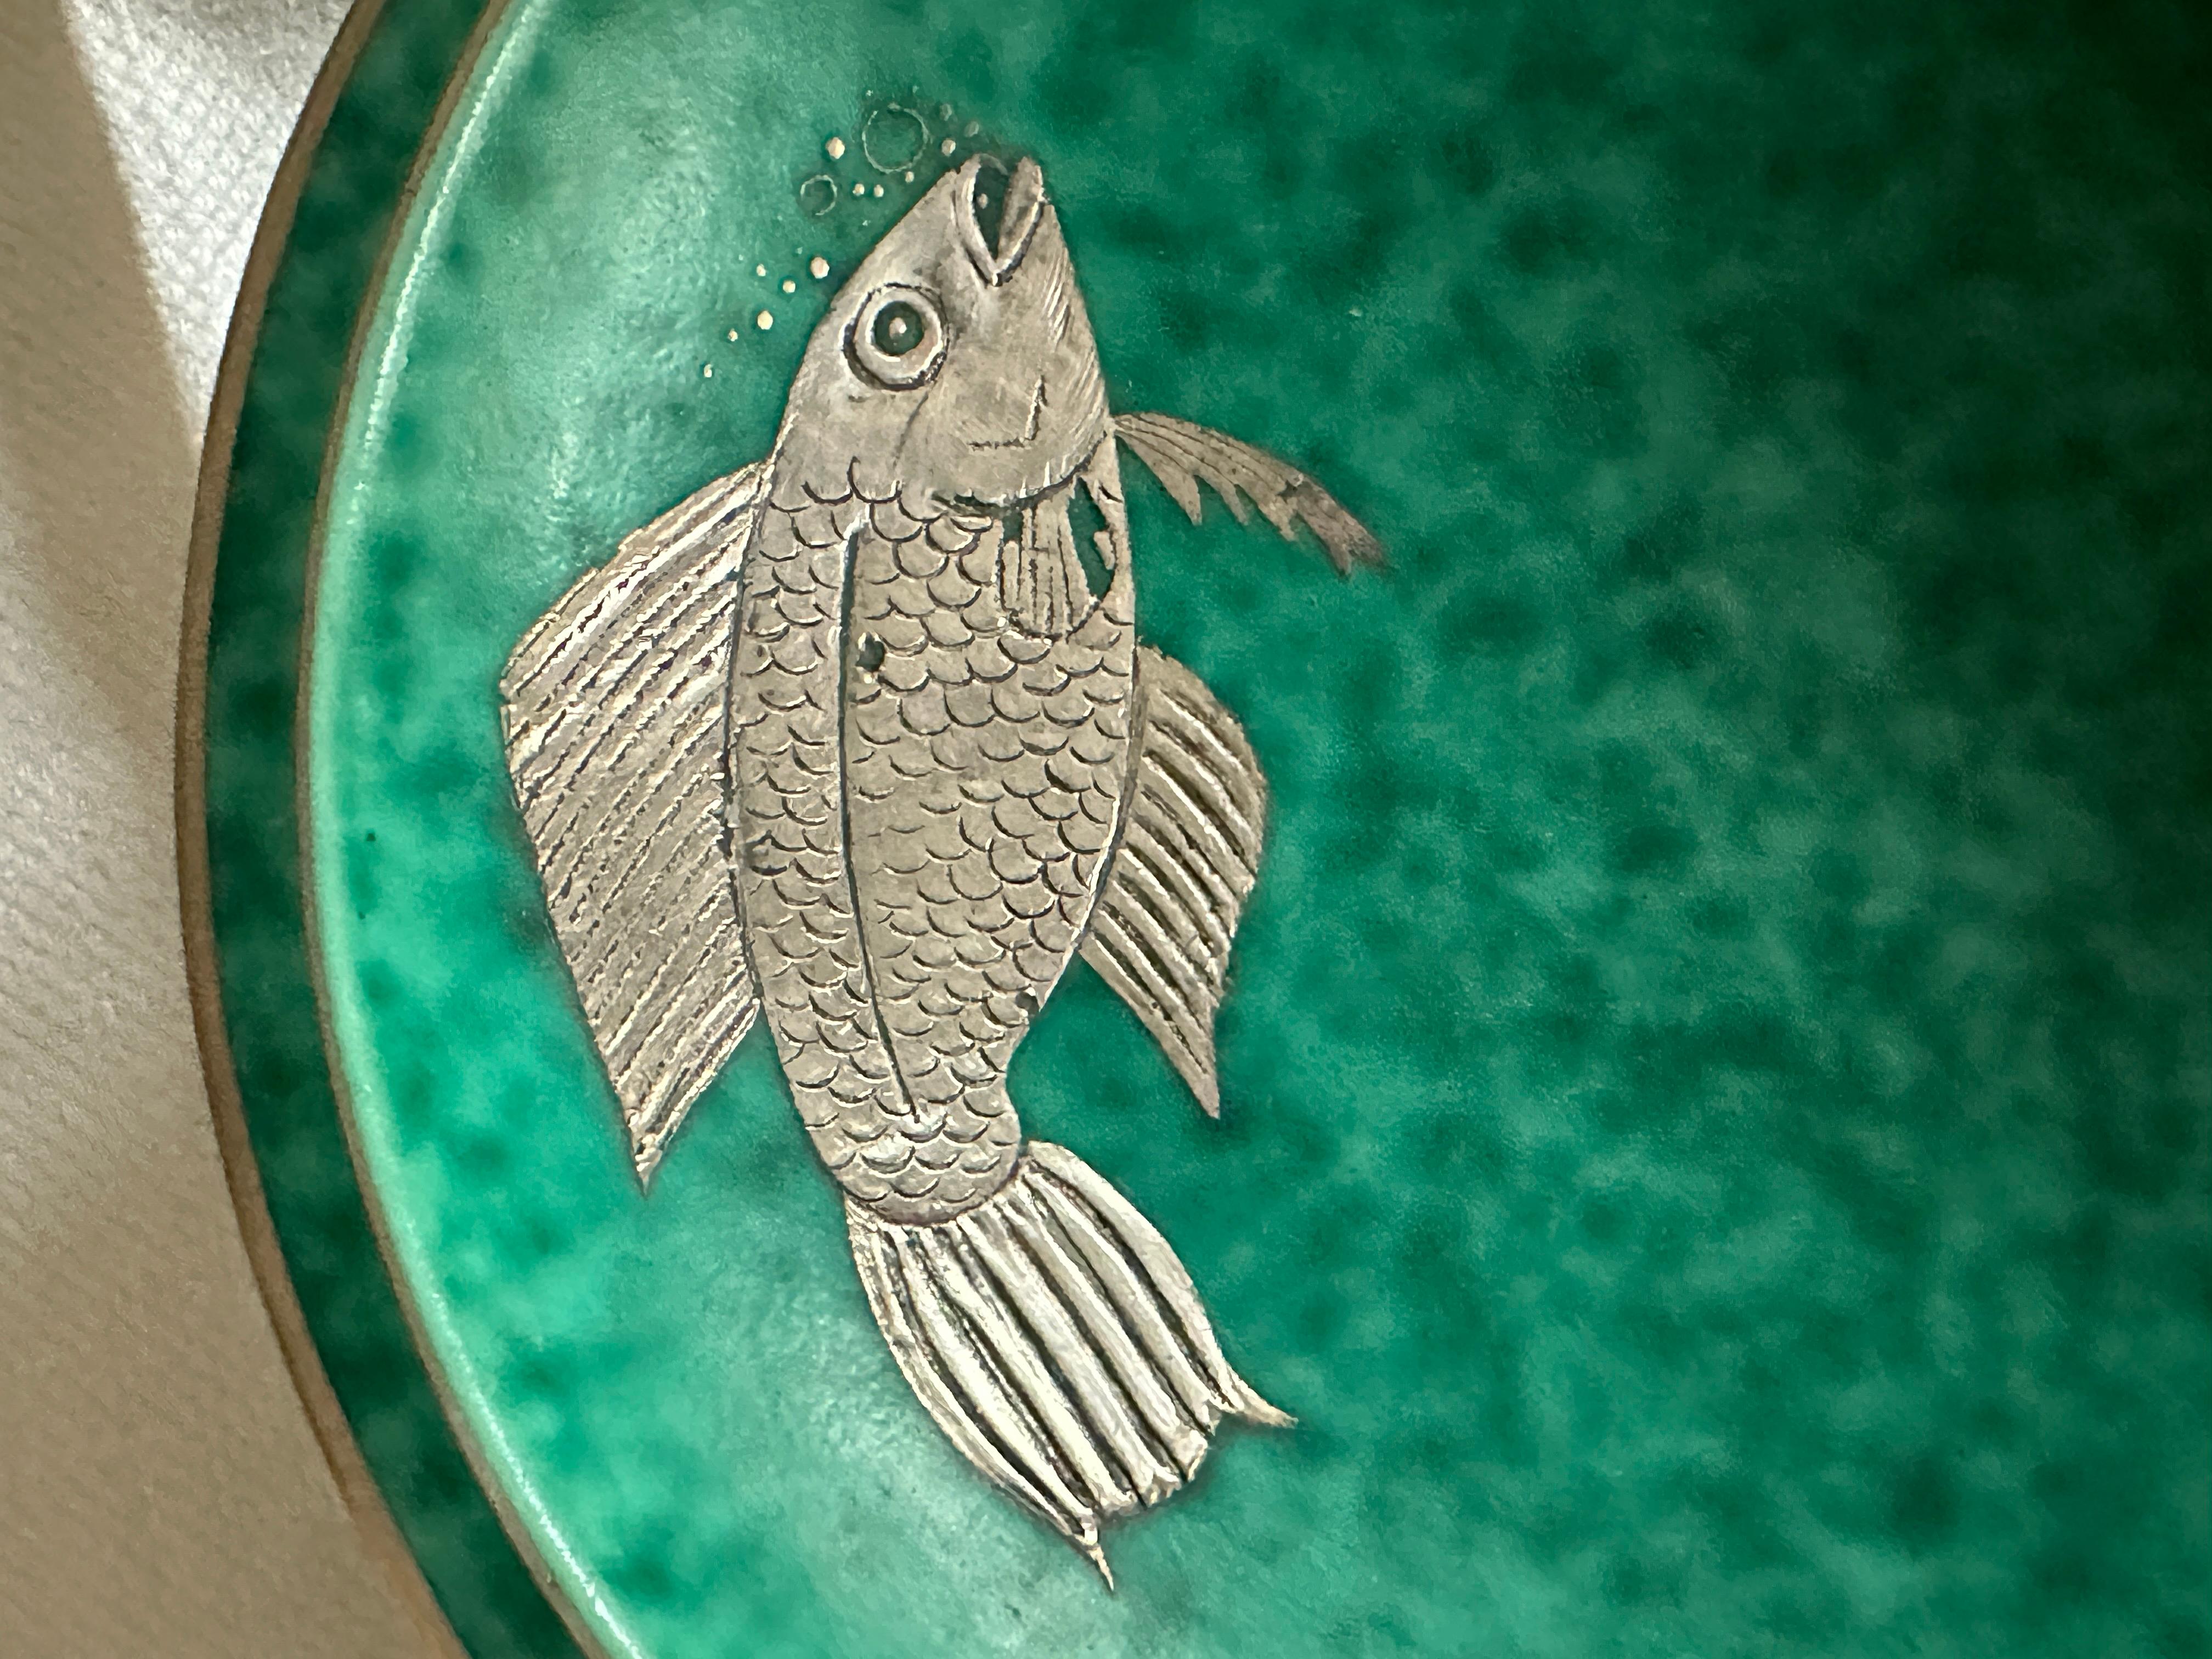 Schöne Schale mit Silbereinlage, die einen Fisch und Blasen darstellt... Argenta série von Wilhelm kage, Gustavsberg.
Guter Zustand
Wilhelm Kåge (1889-1960) ist einer der bekanntesten Vertreter des berühmten schwedischen Keramikdesigns des 20.